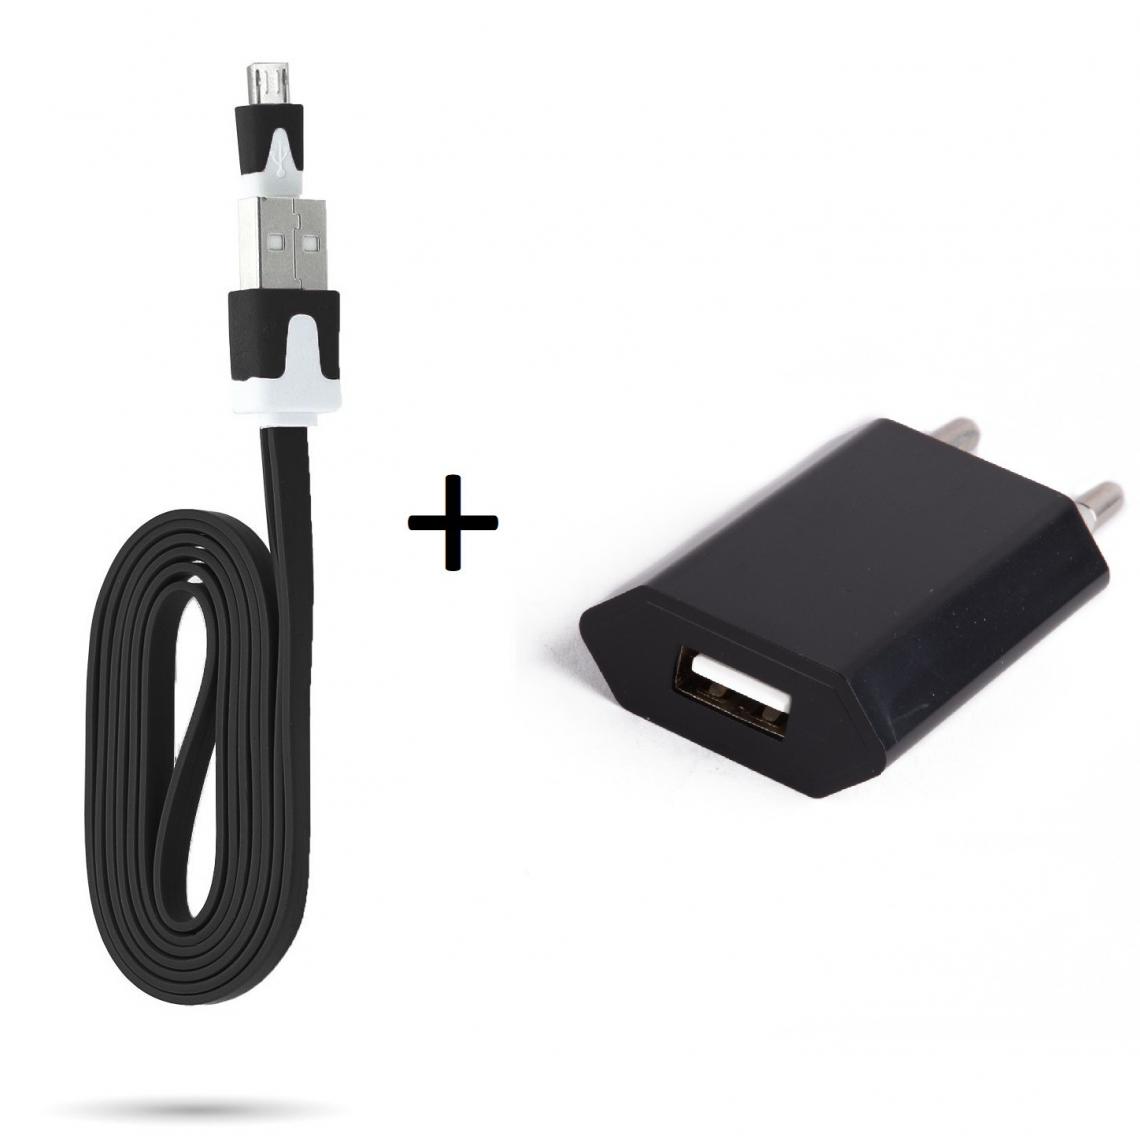 Shot - Cable Noodle 1m Chargeur + Prise Secteur pour WIKO View 2 Plus Smartphone Micro USB Murale Pack Android (NOIR) - Chargeur secteur téléphone